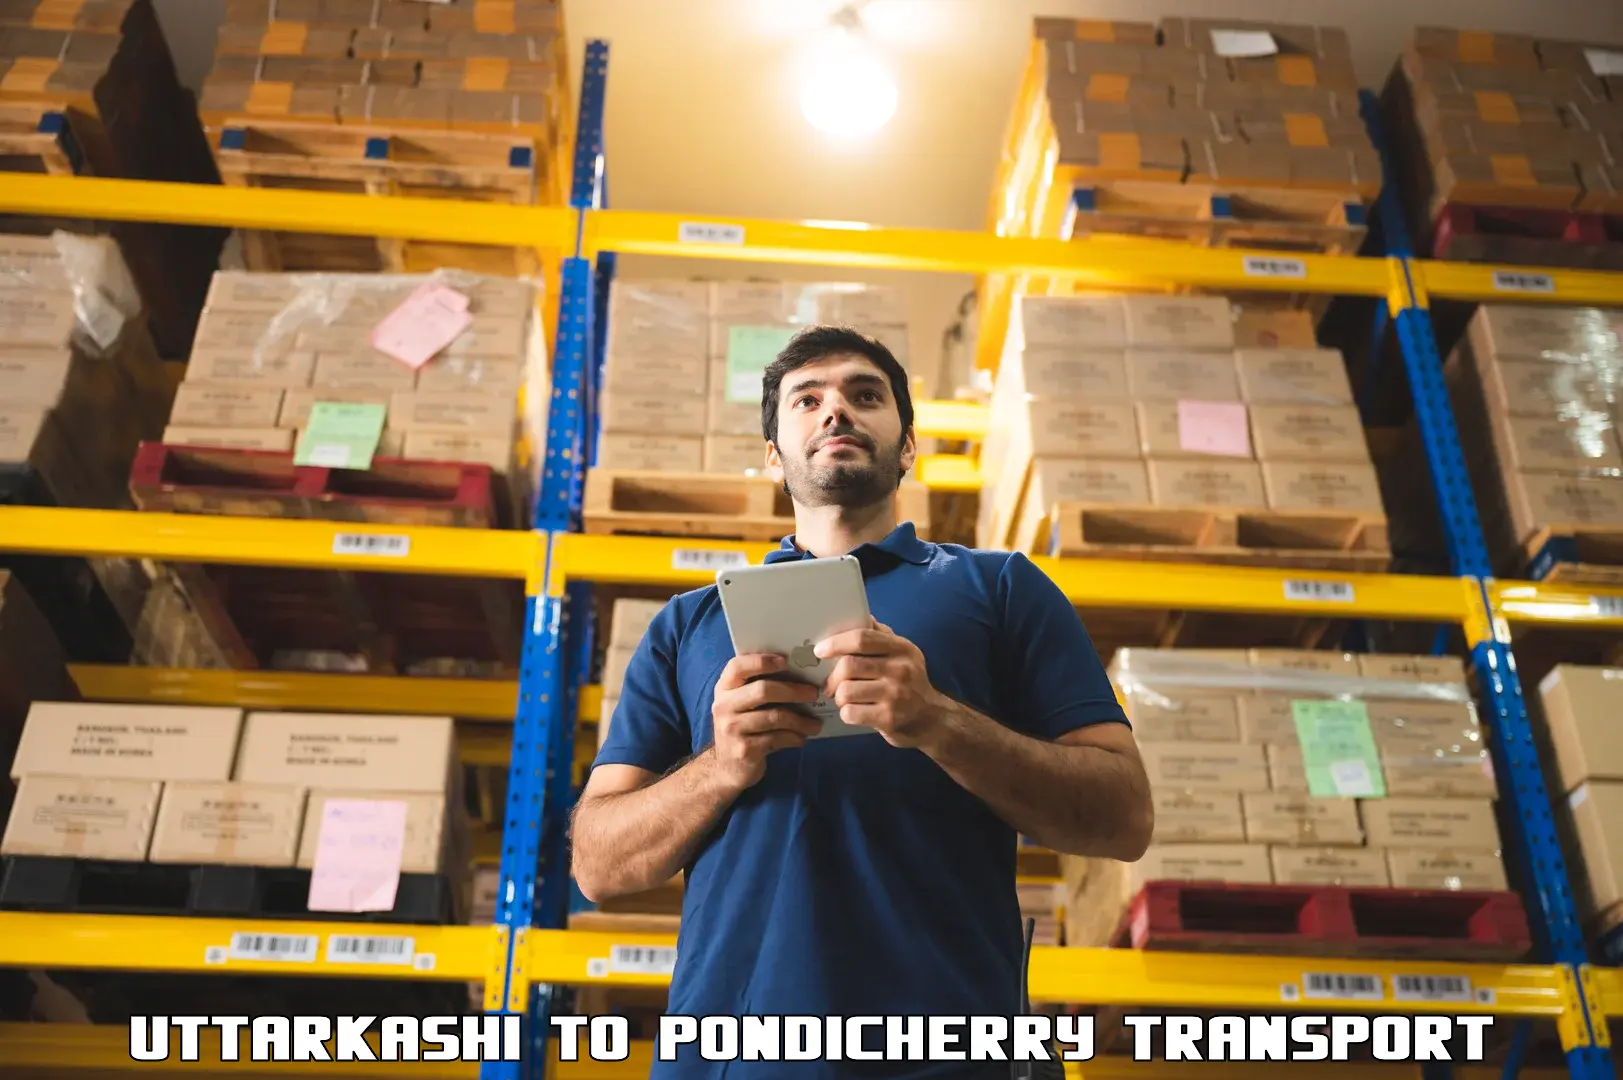 Transport shared services Uttarkashi to Pondicherry University